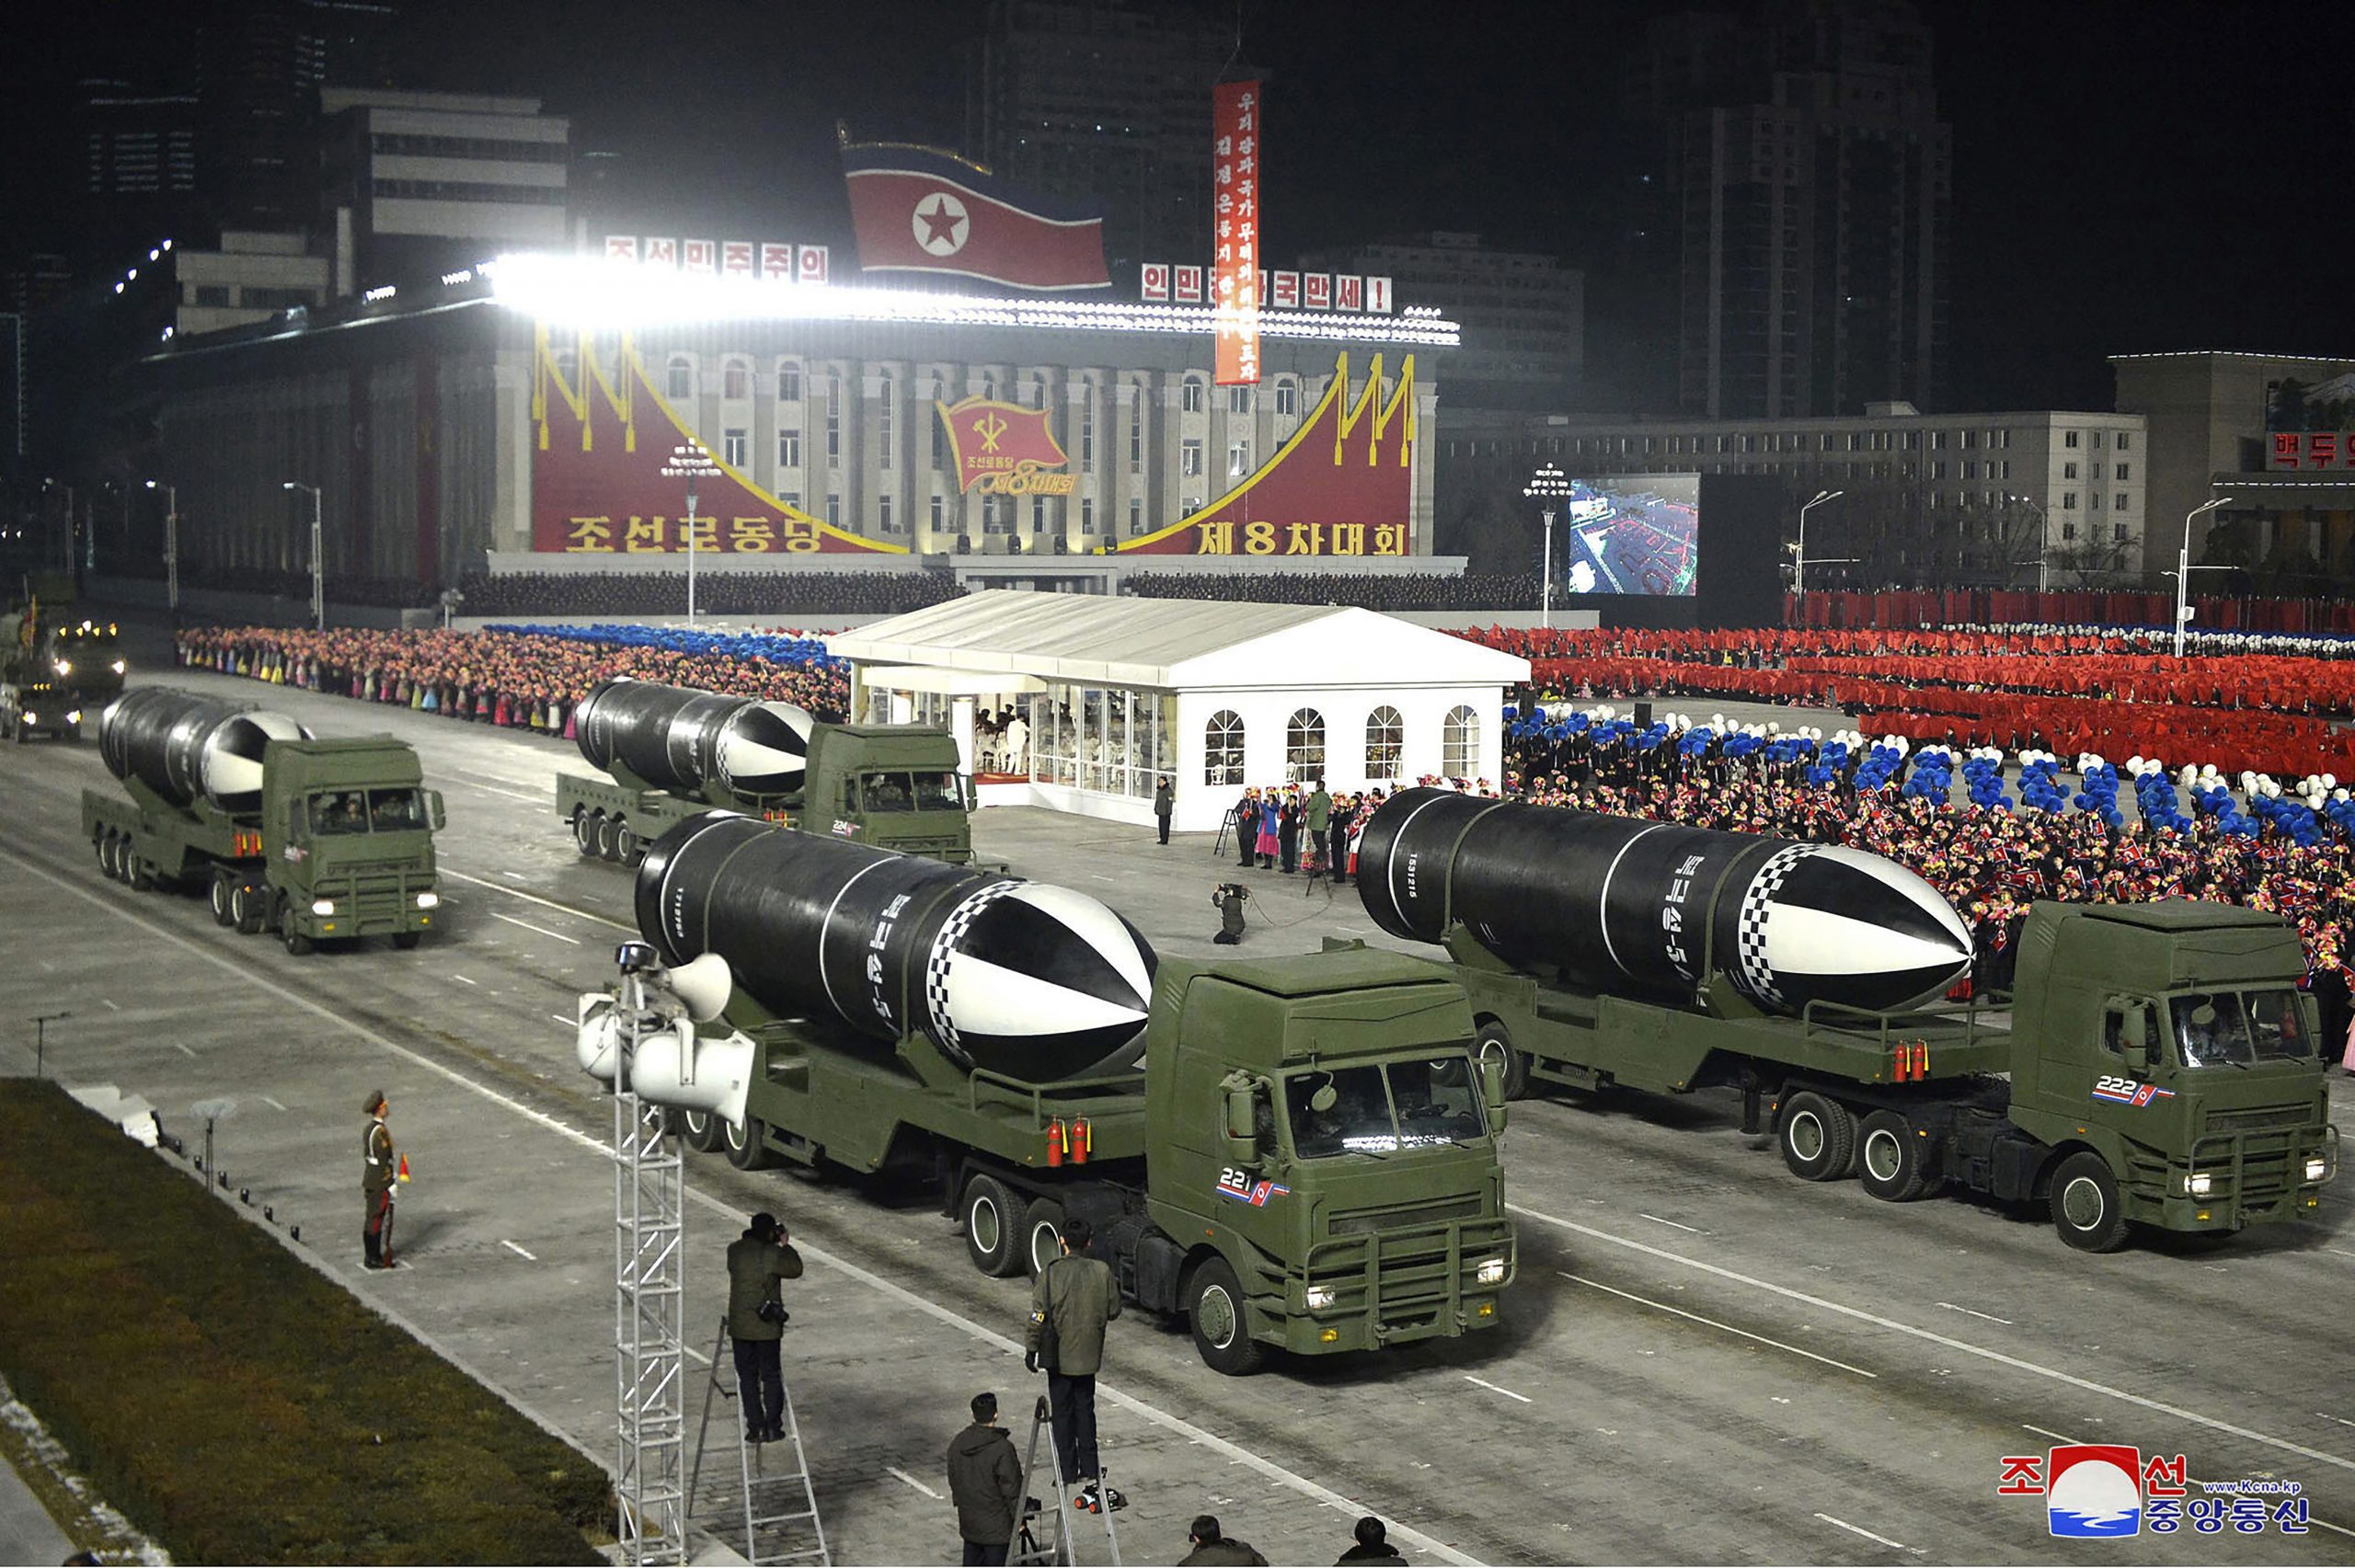     朝鲜9月9阅兵仪式展示新导弹